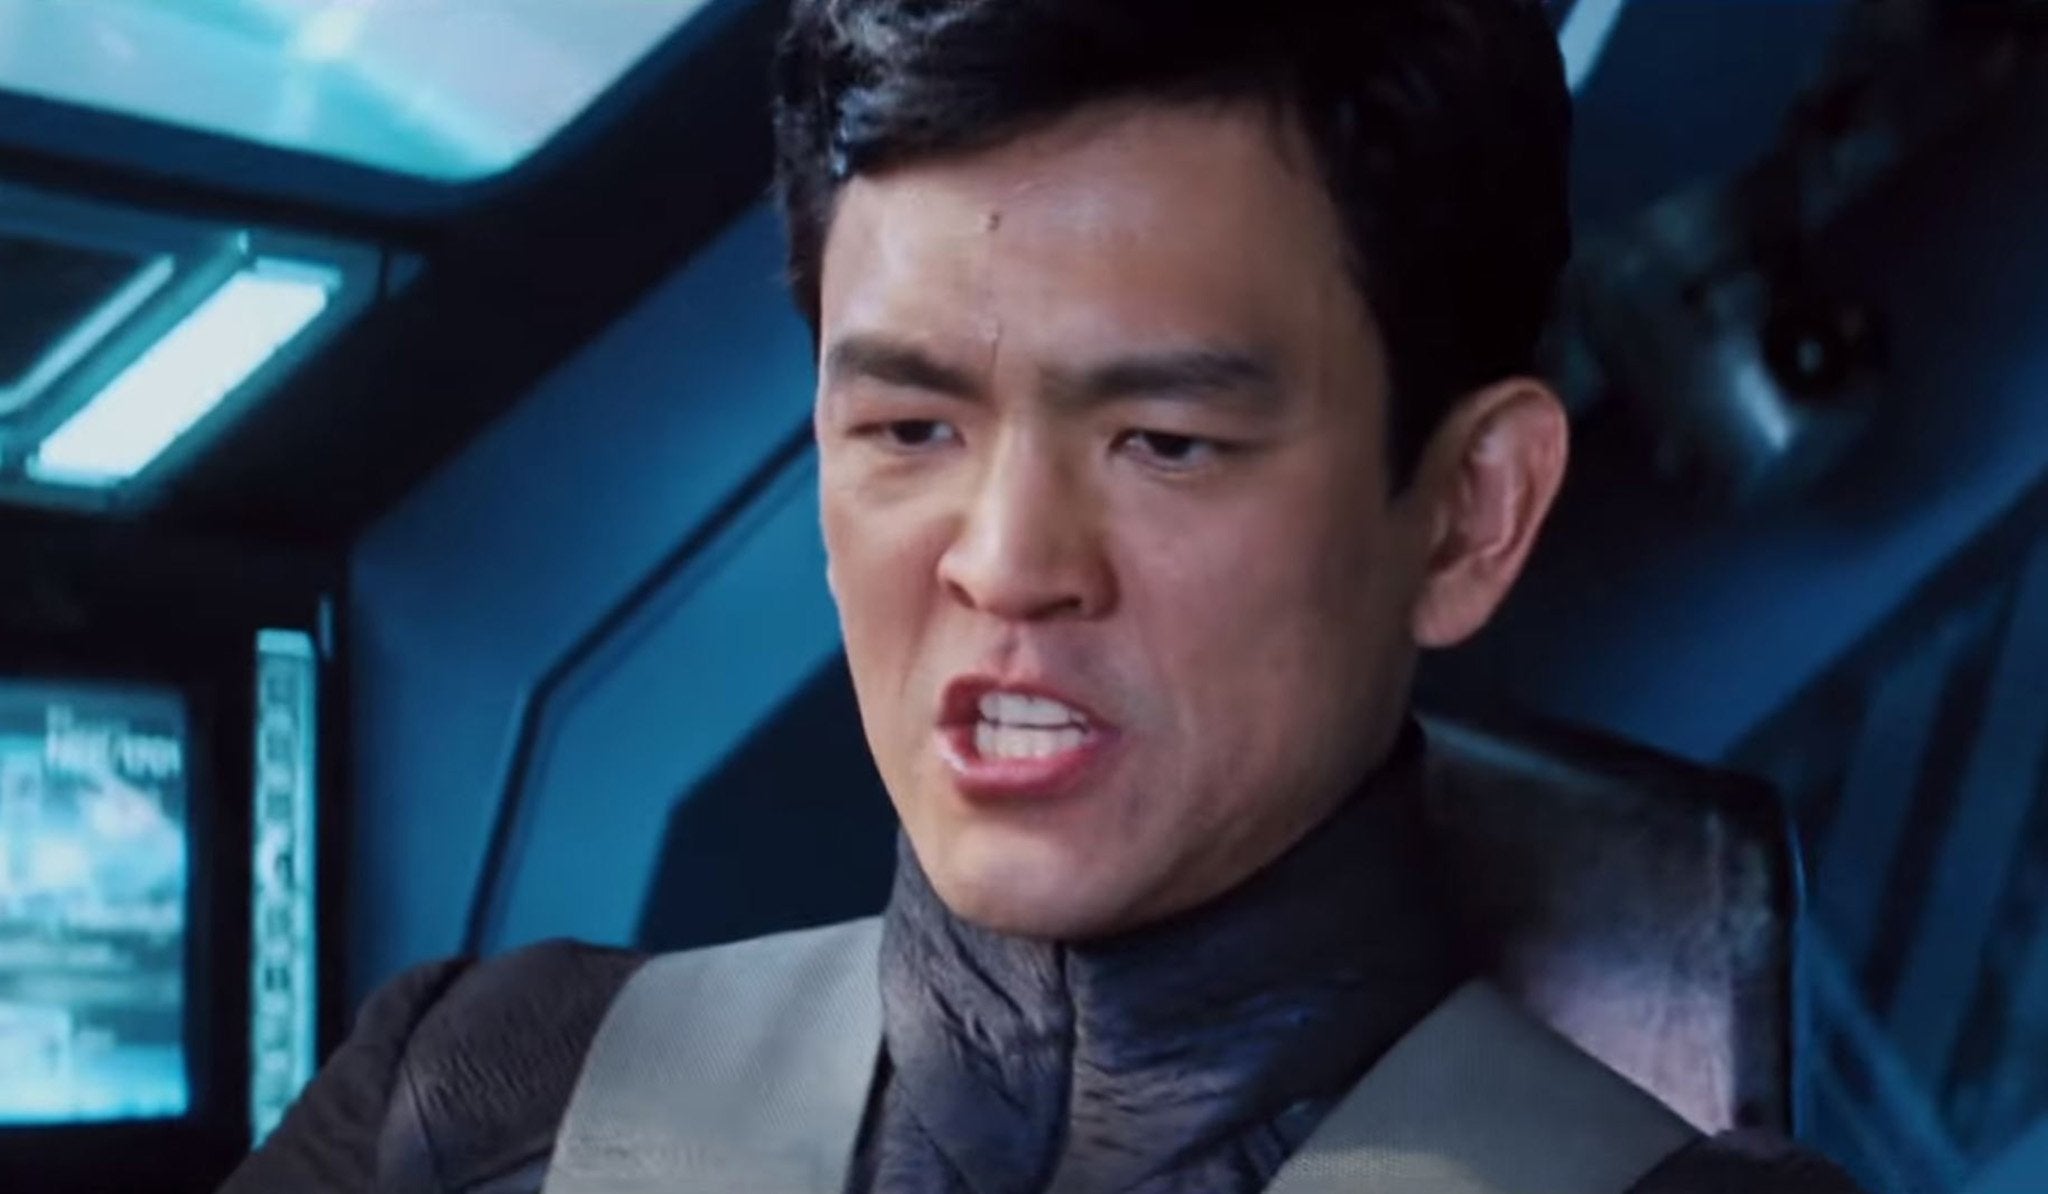 John Cho as Hikaru Sulu in the ‘Star Trek’ reboot film series